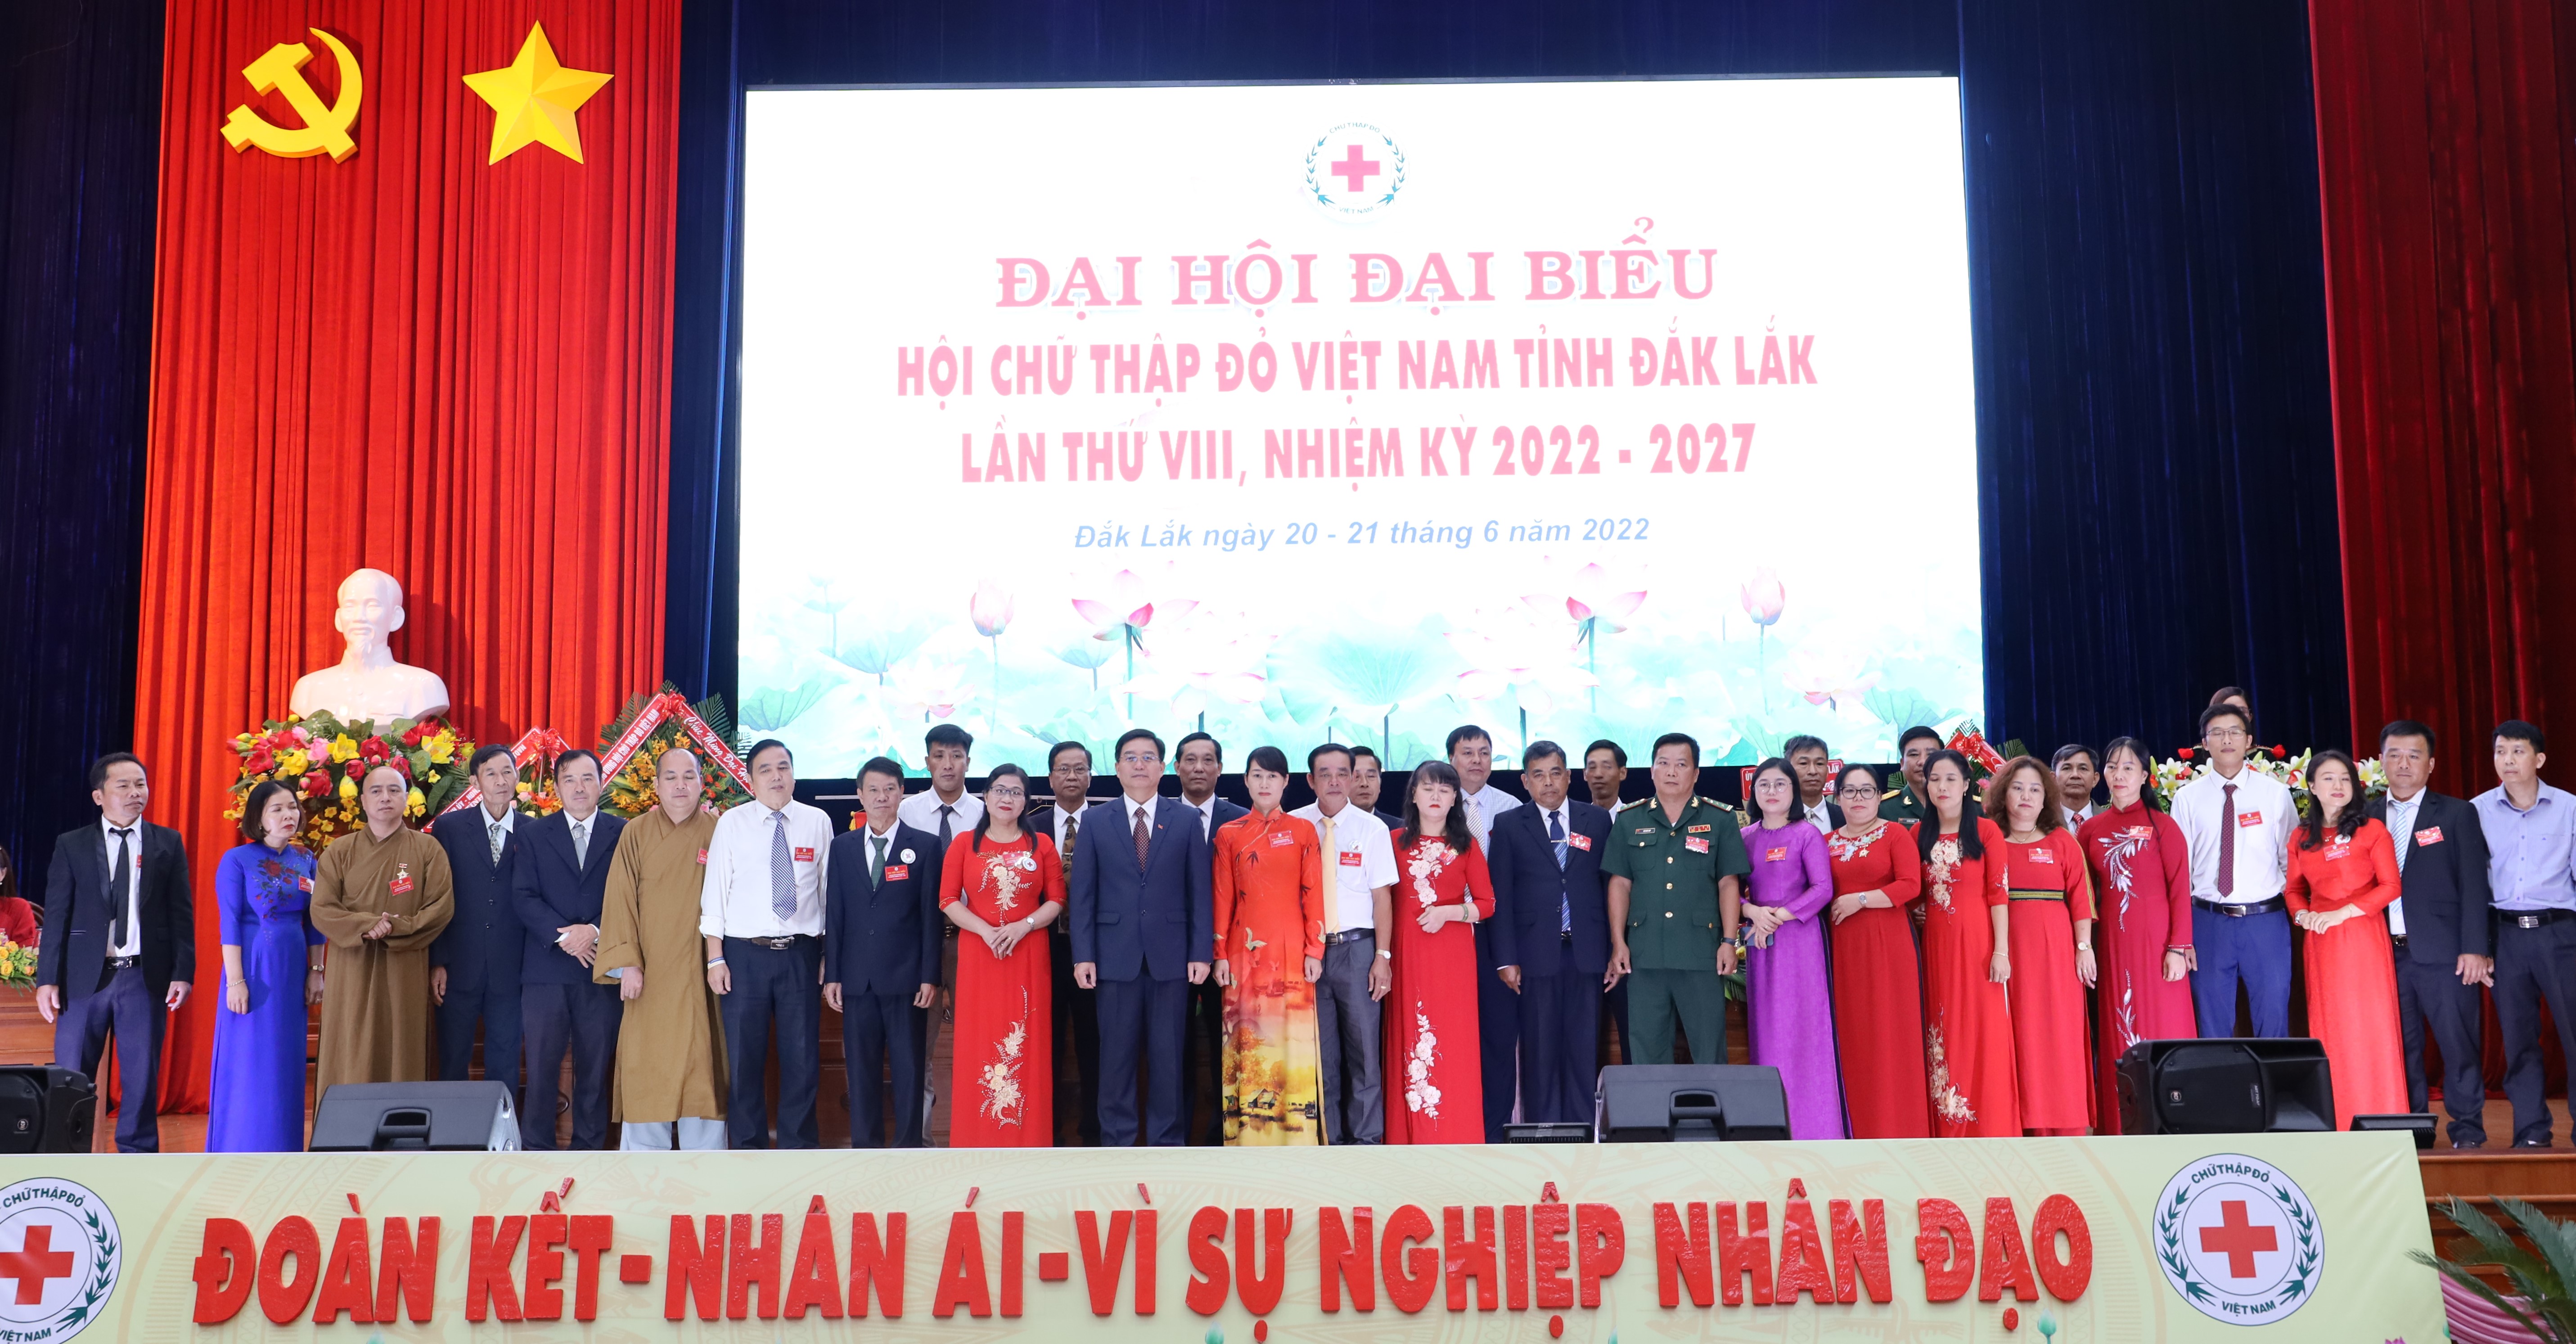 Đại hội đại biểu Hội Chữ Thập đỏ tỉnh Đắk Lắk lần thứ VIII, nhiệm kỳ 2022-2027